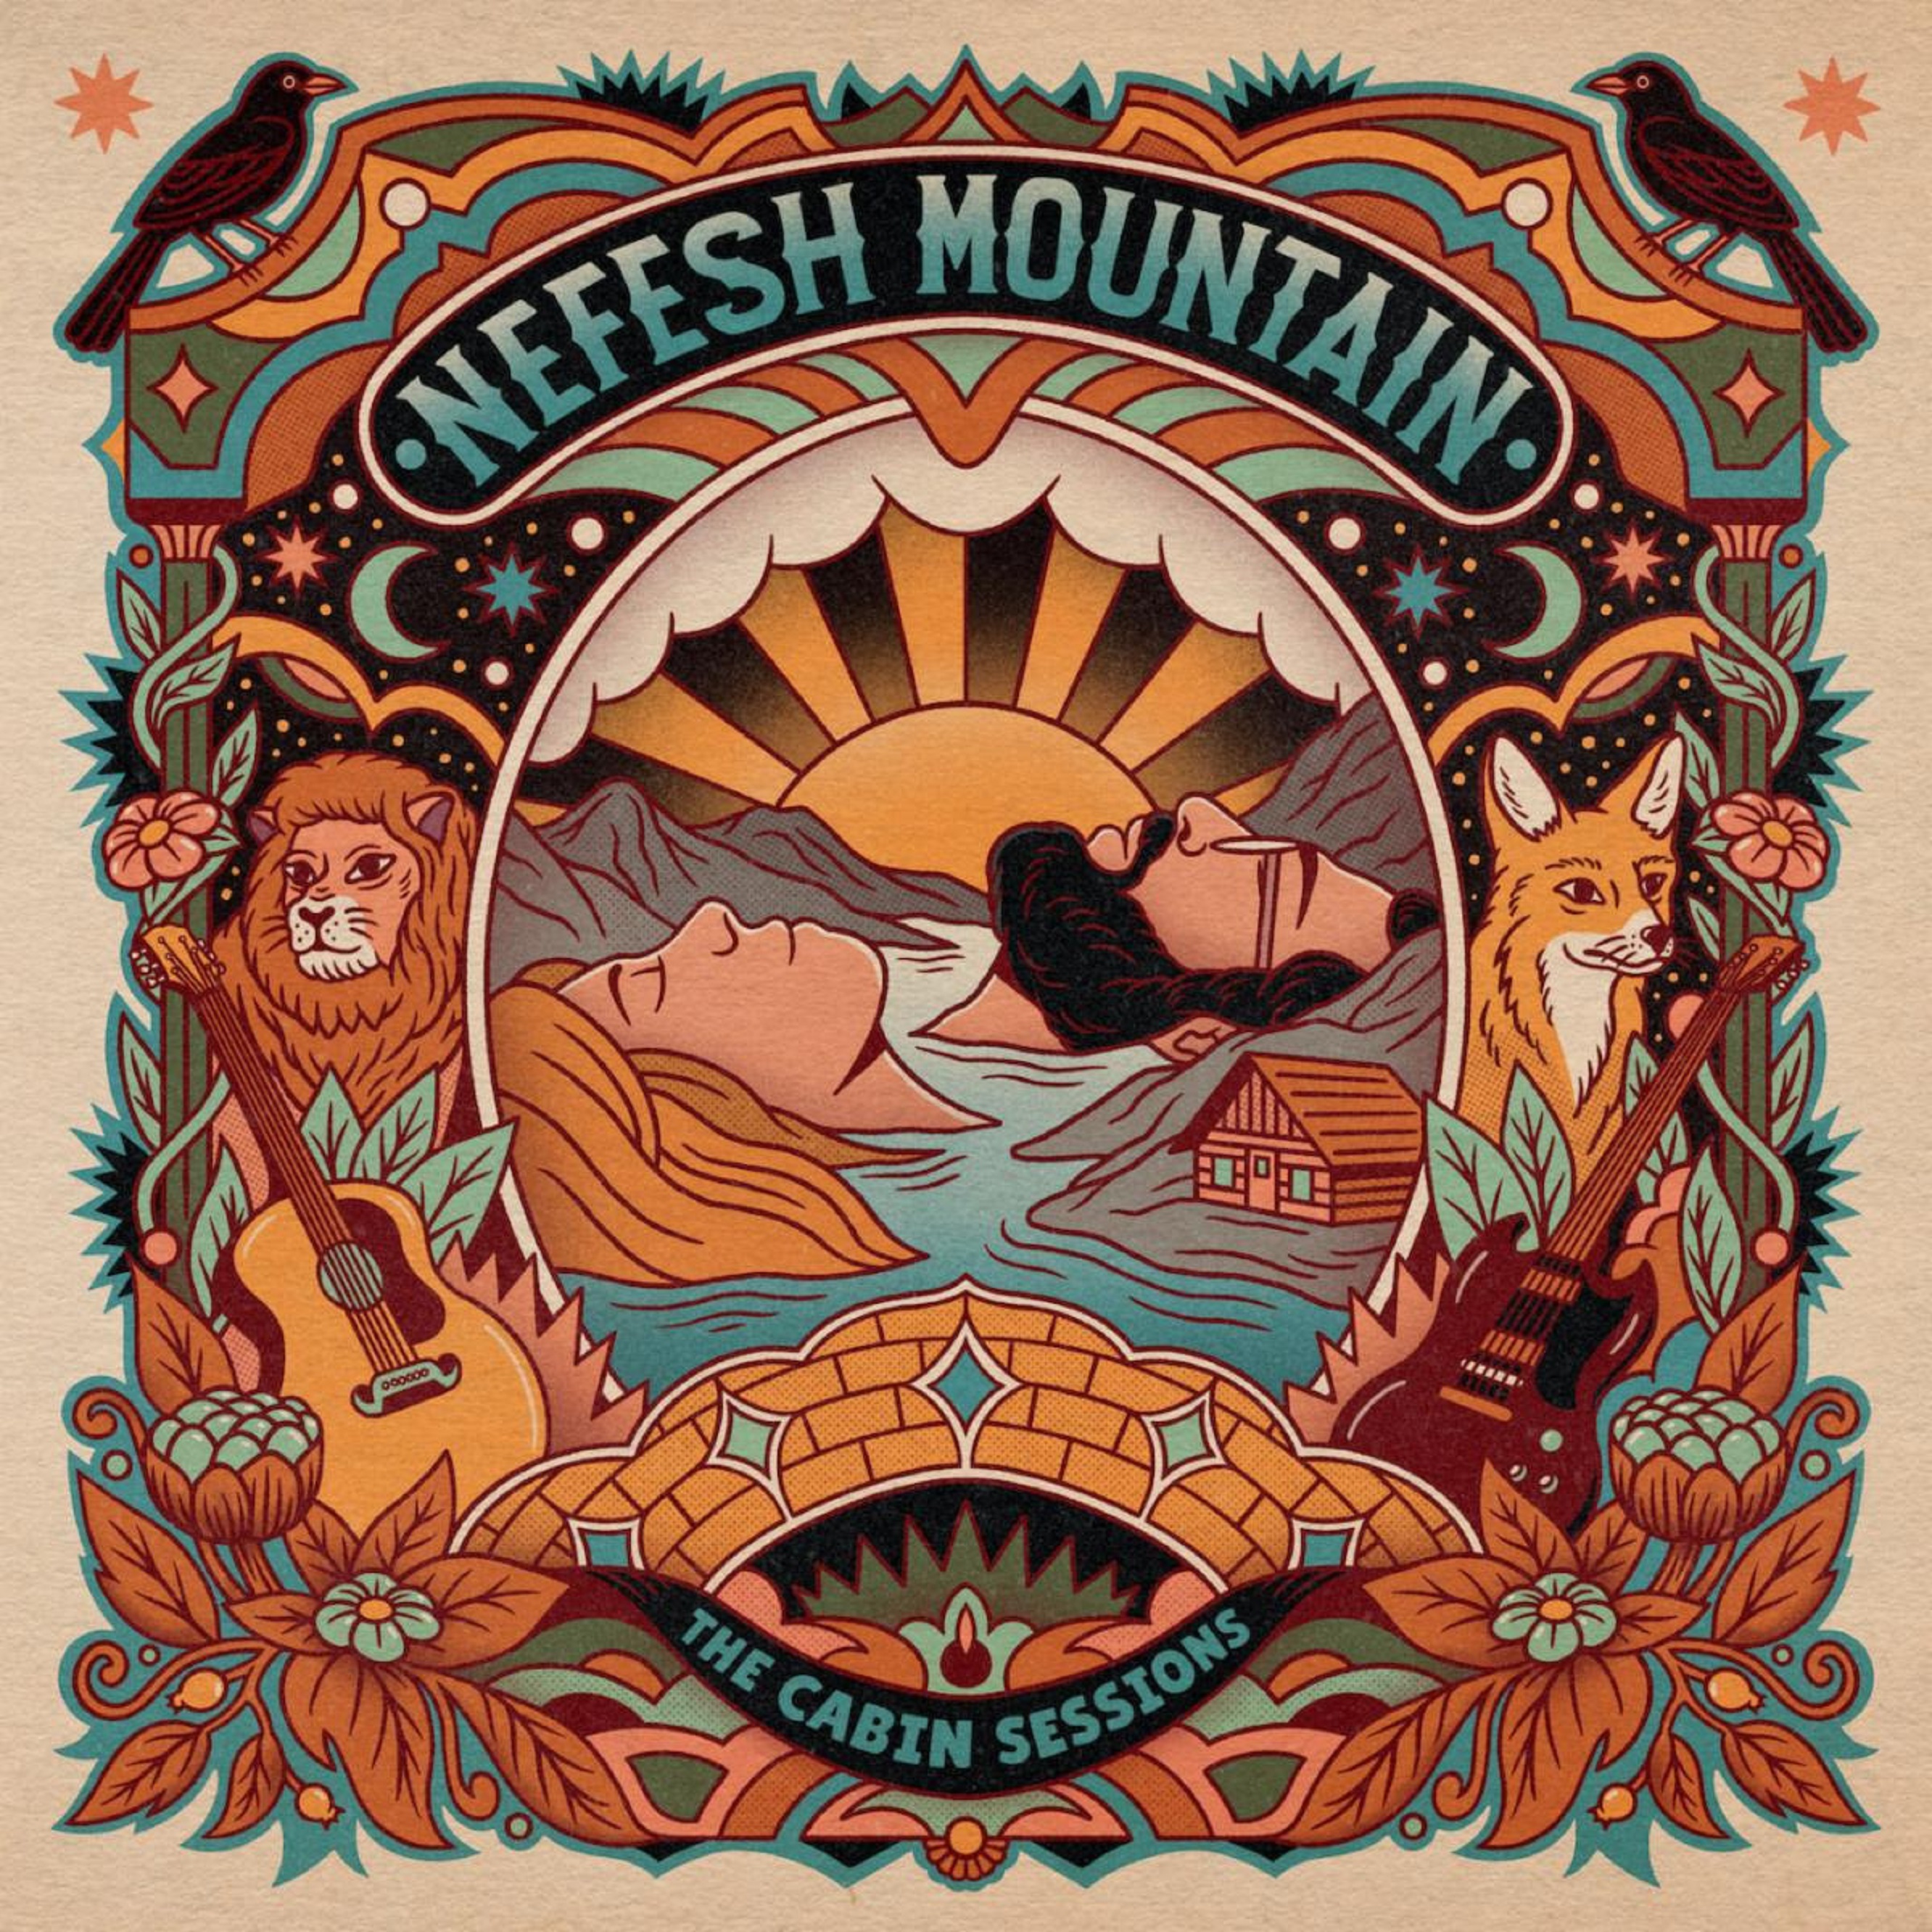 Nefesh Mountain Release Timely Single "The Narrow Bridge"